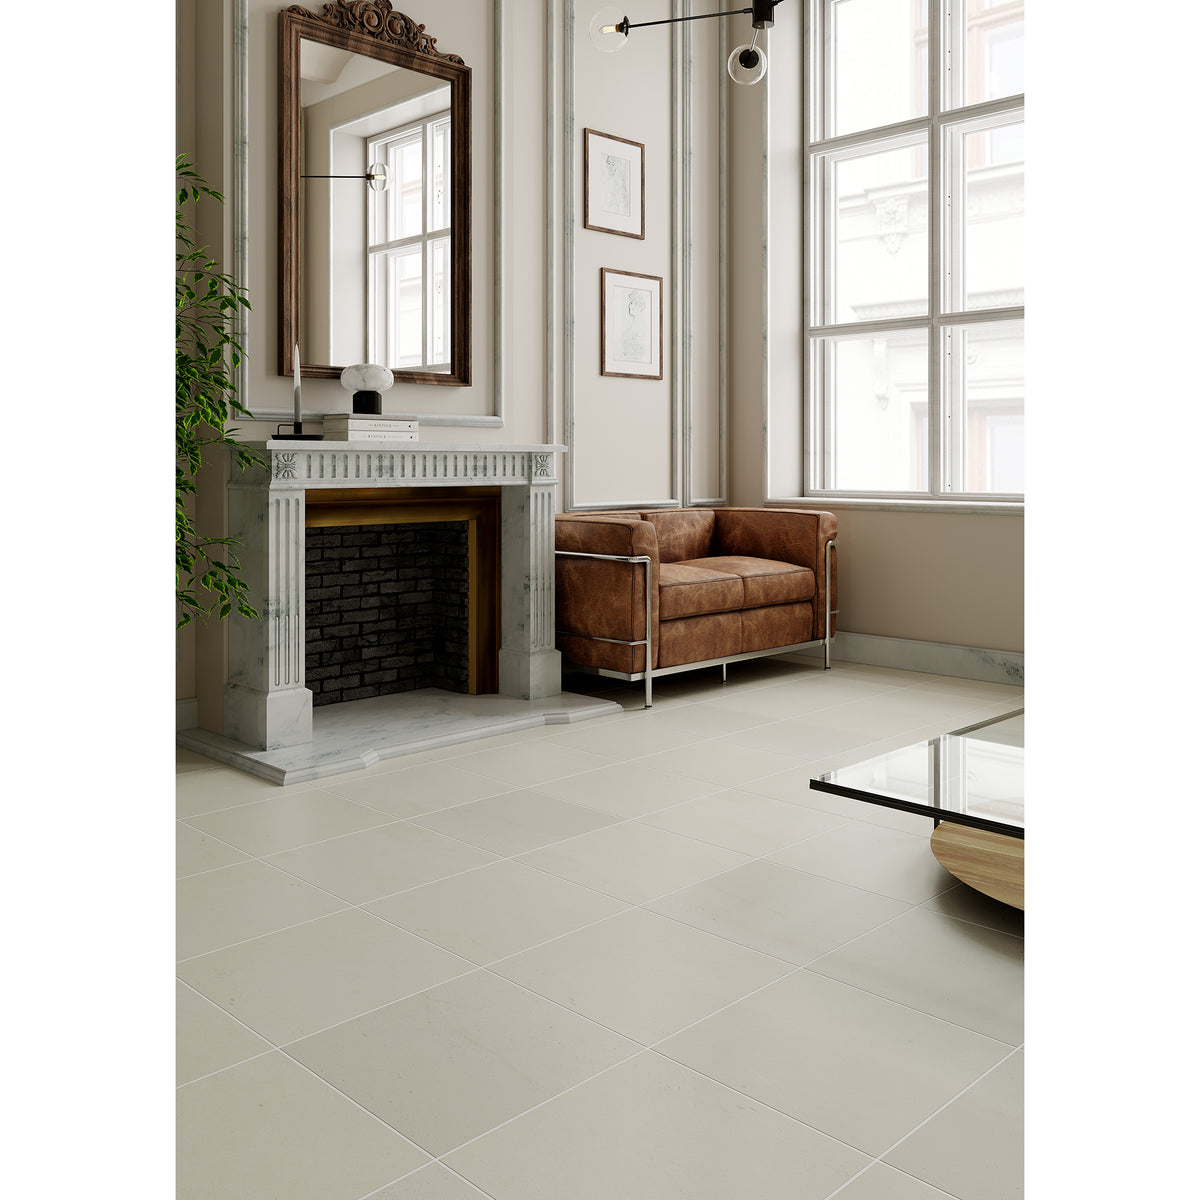 Travertine Tile for Floors & More